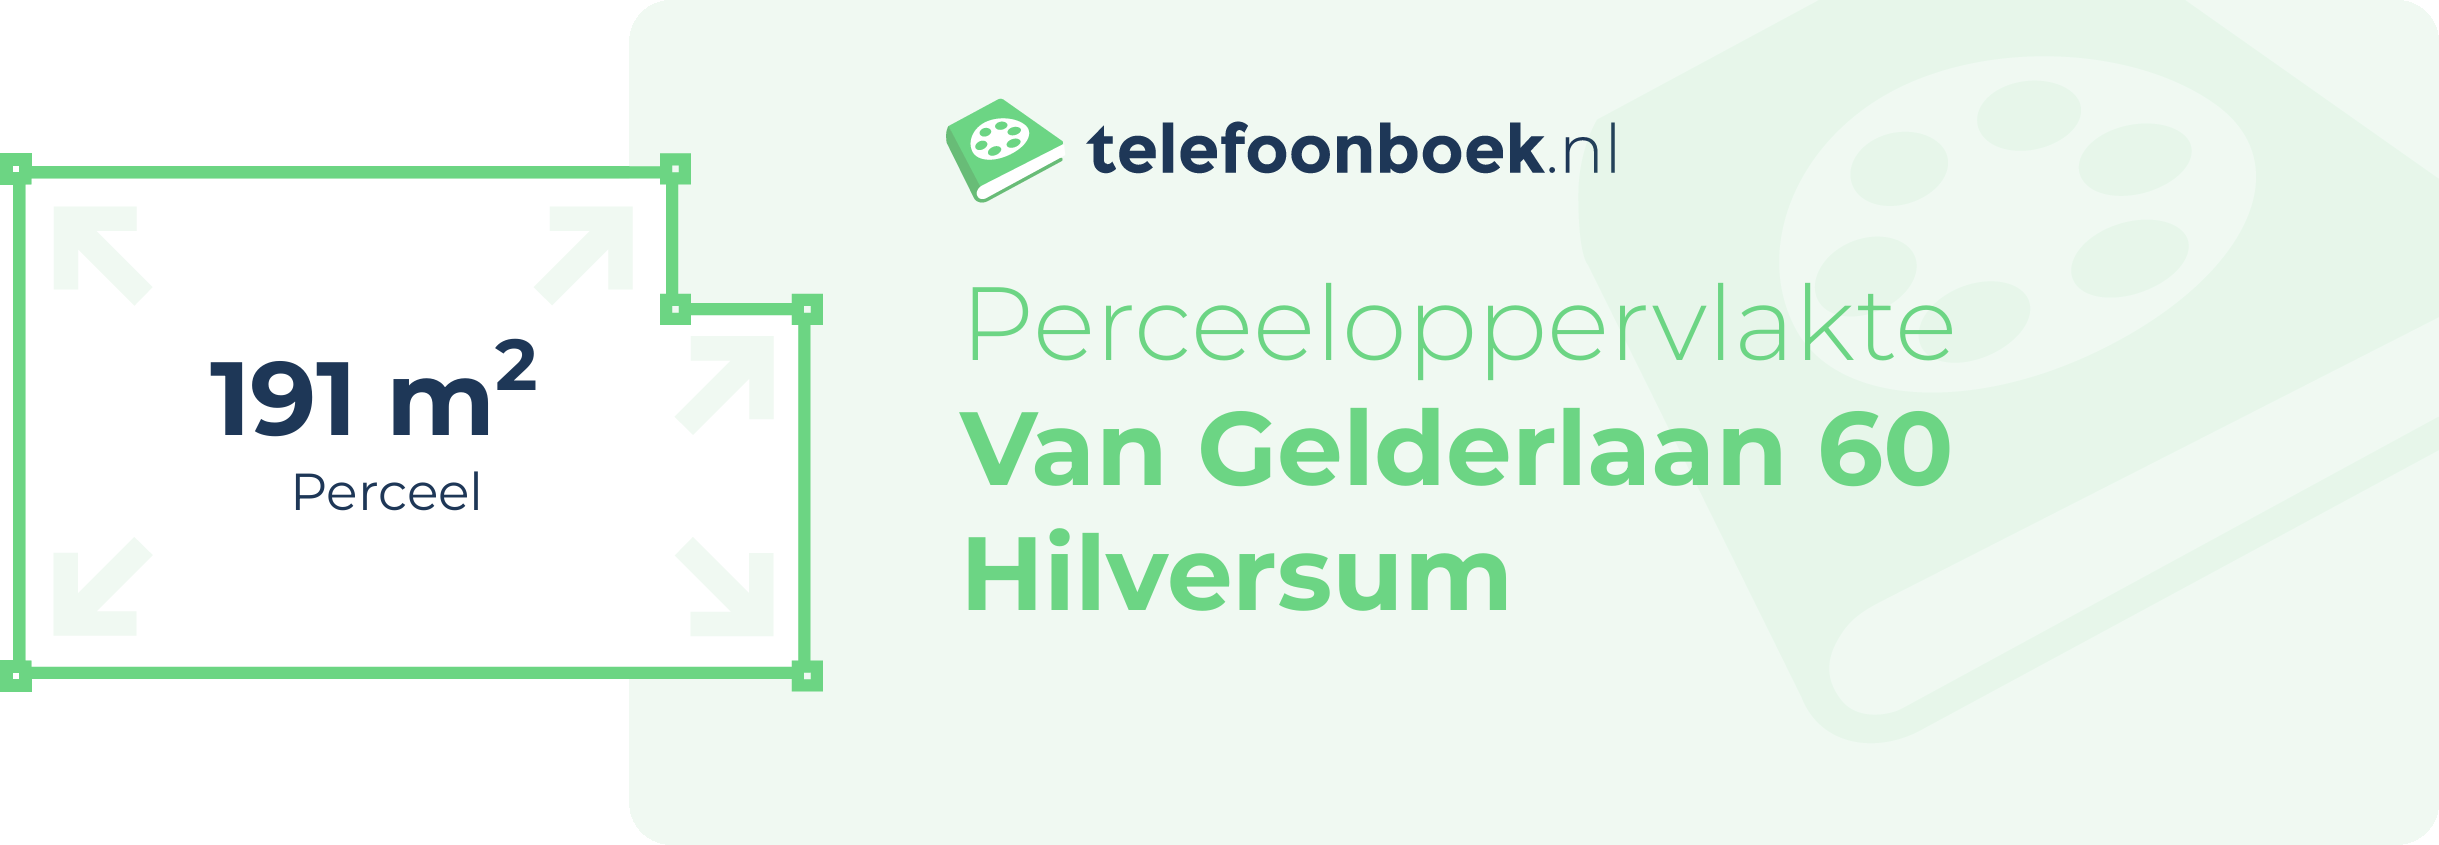 Perceeloppervlakte Van Gelderlaan 60 Hilversum